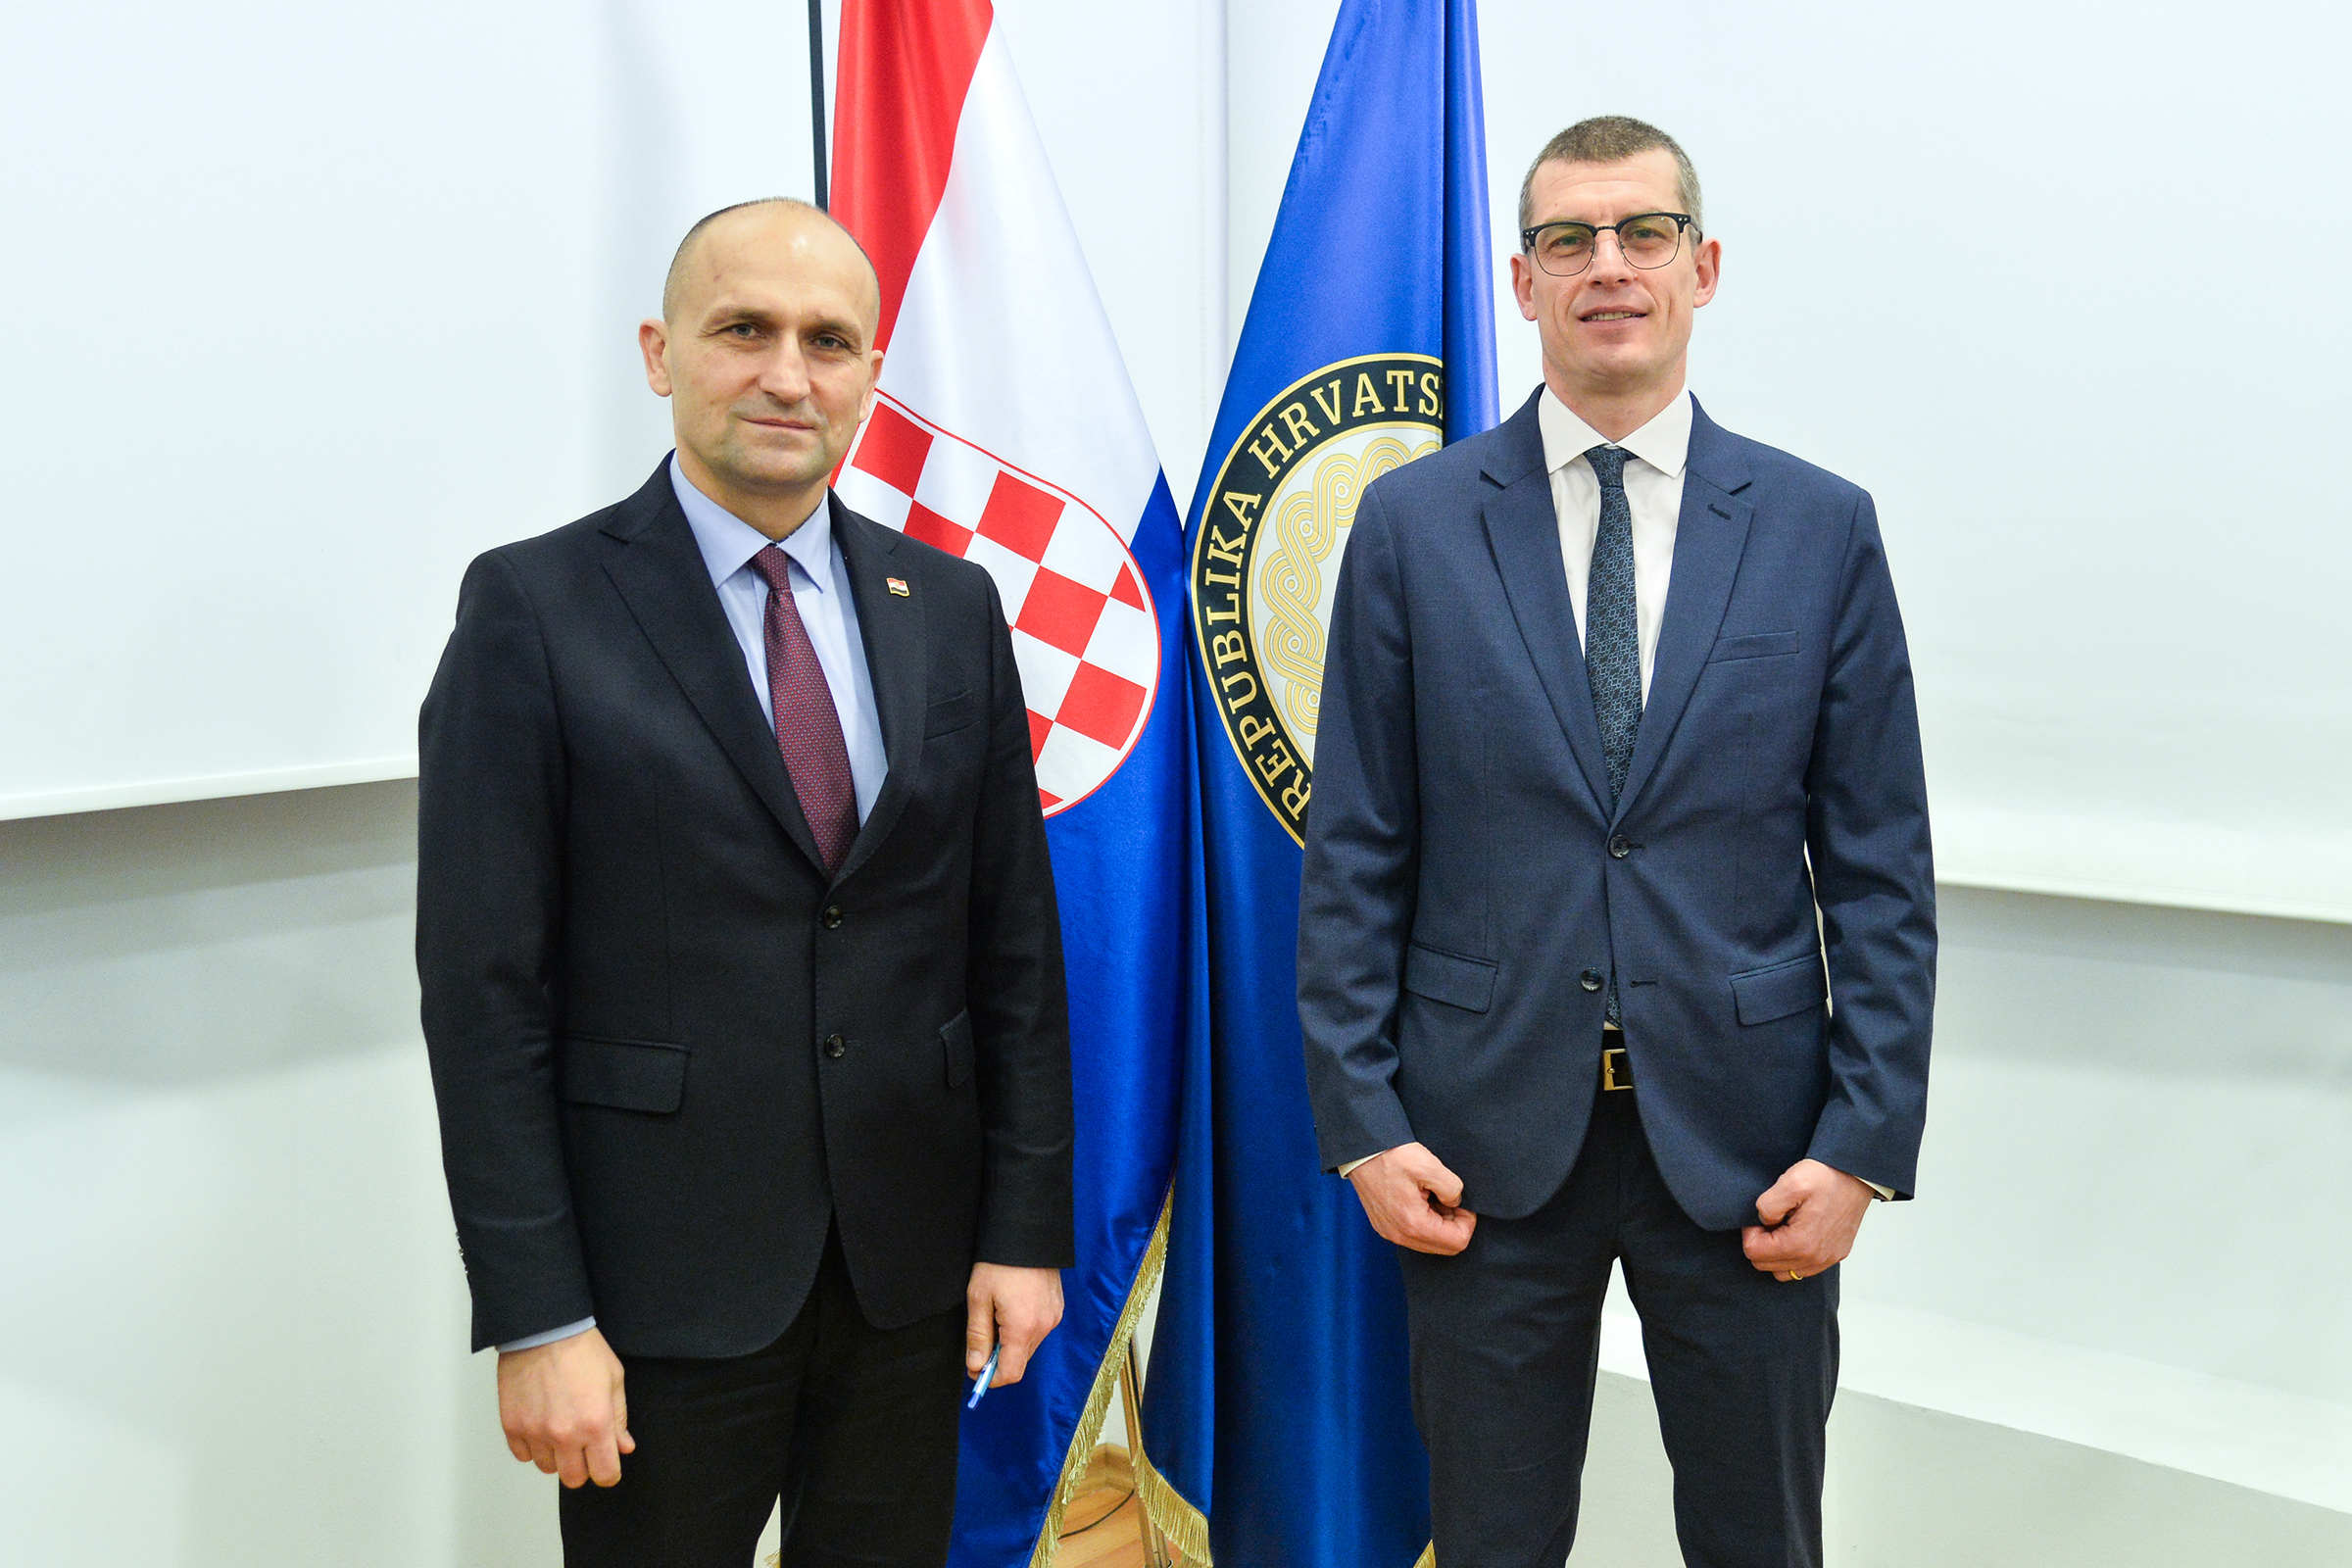 Nastupni posjet slovenskog veleposlanika u MORH-u